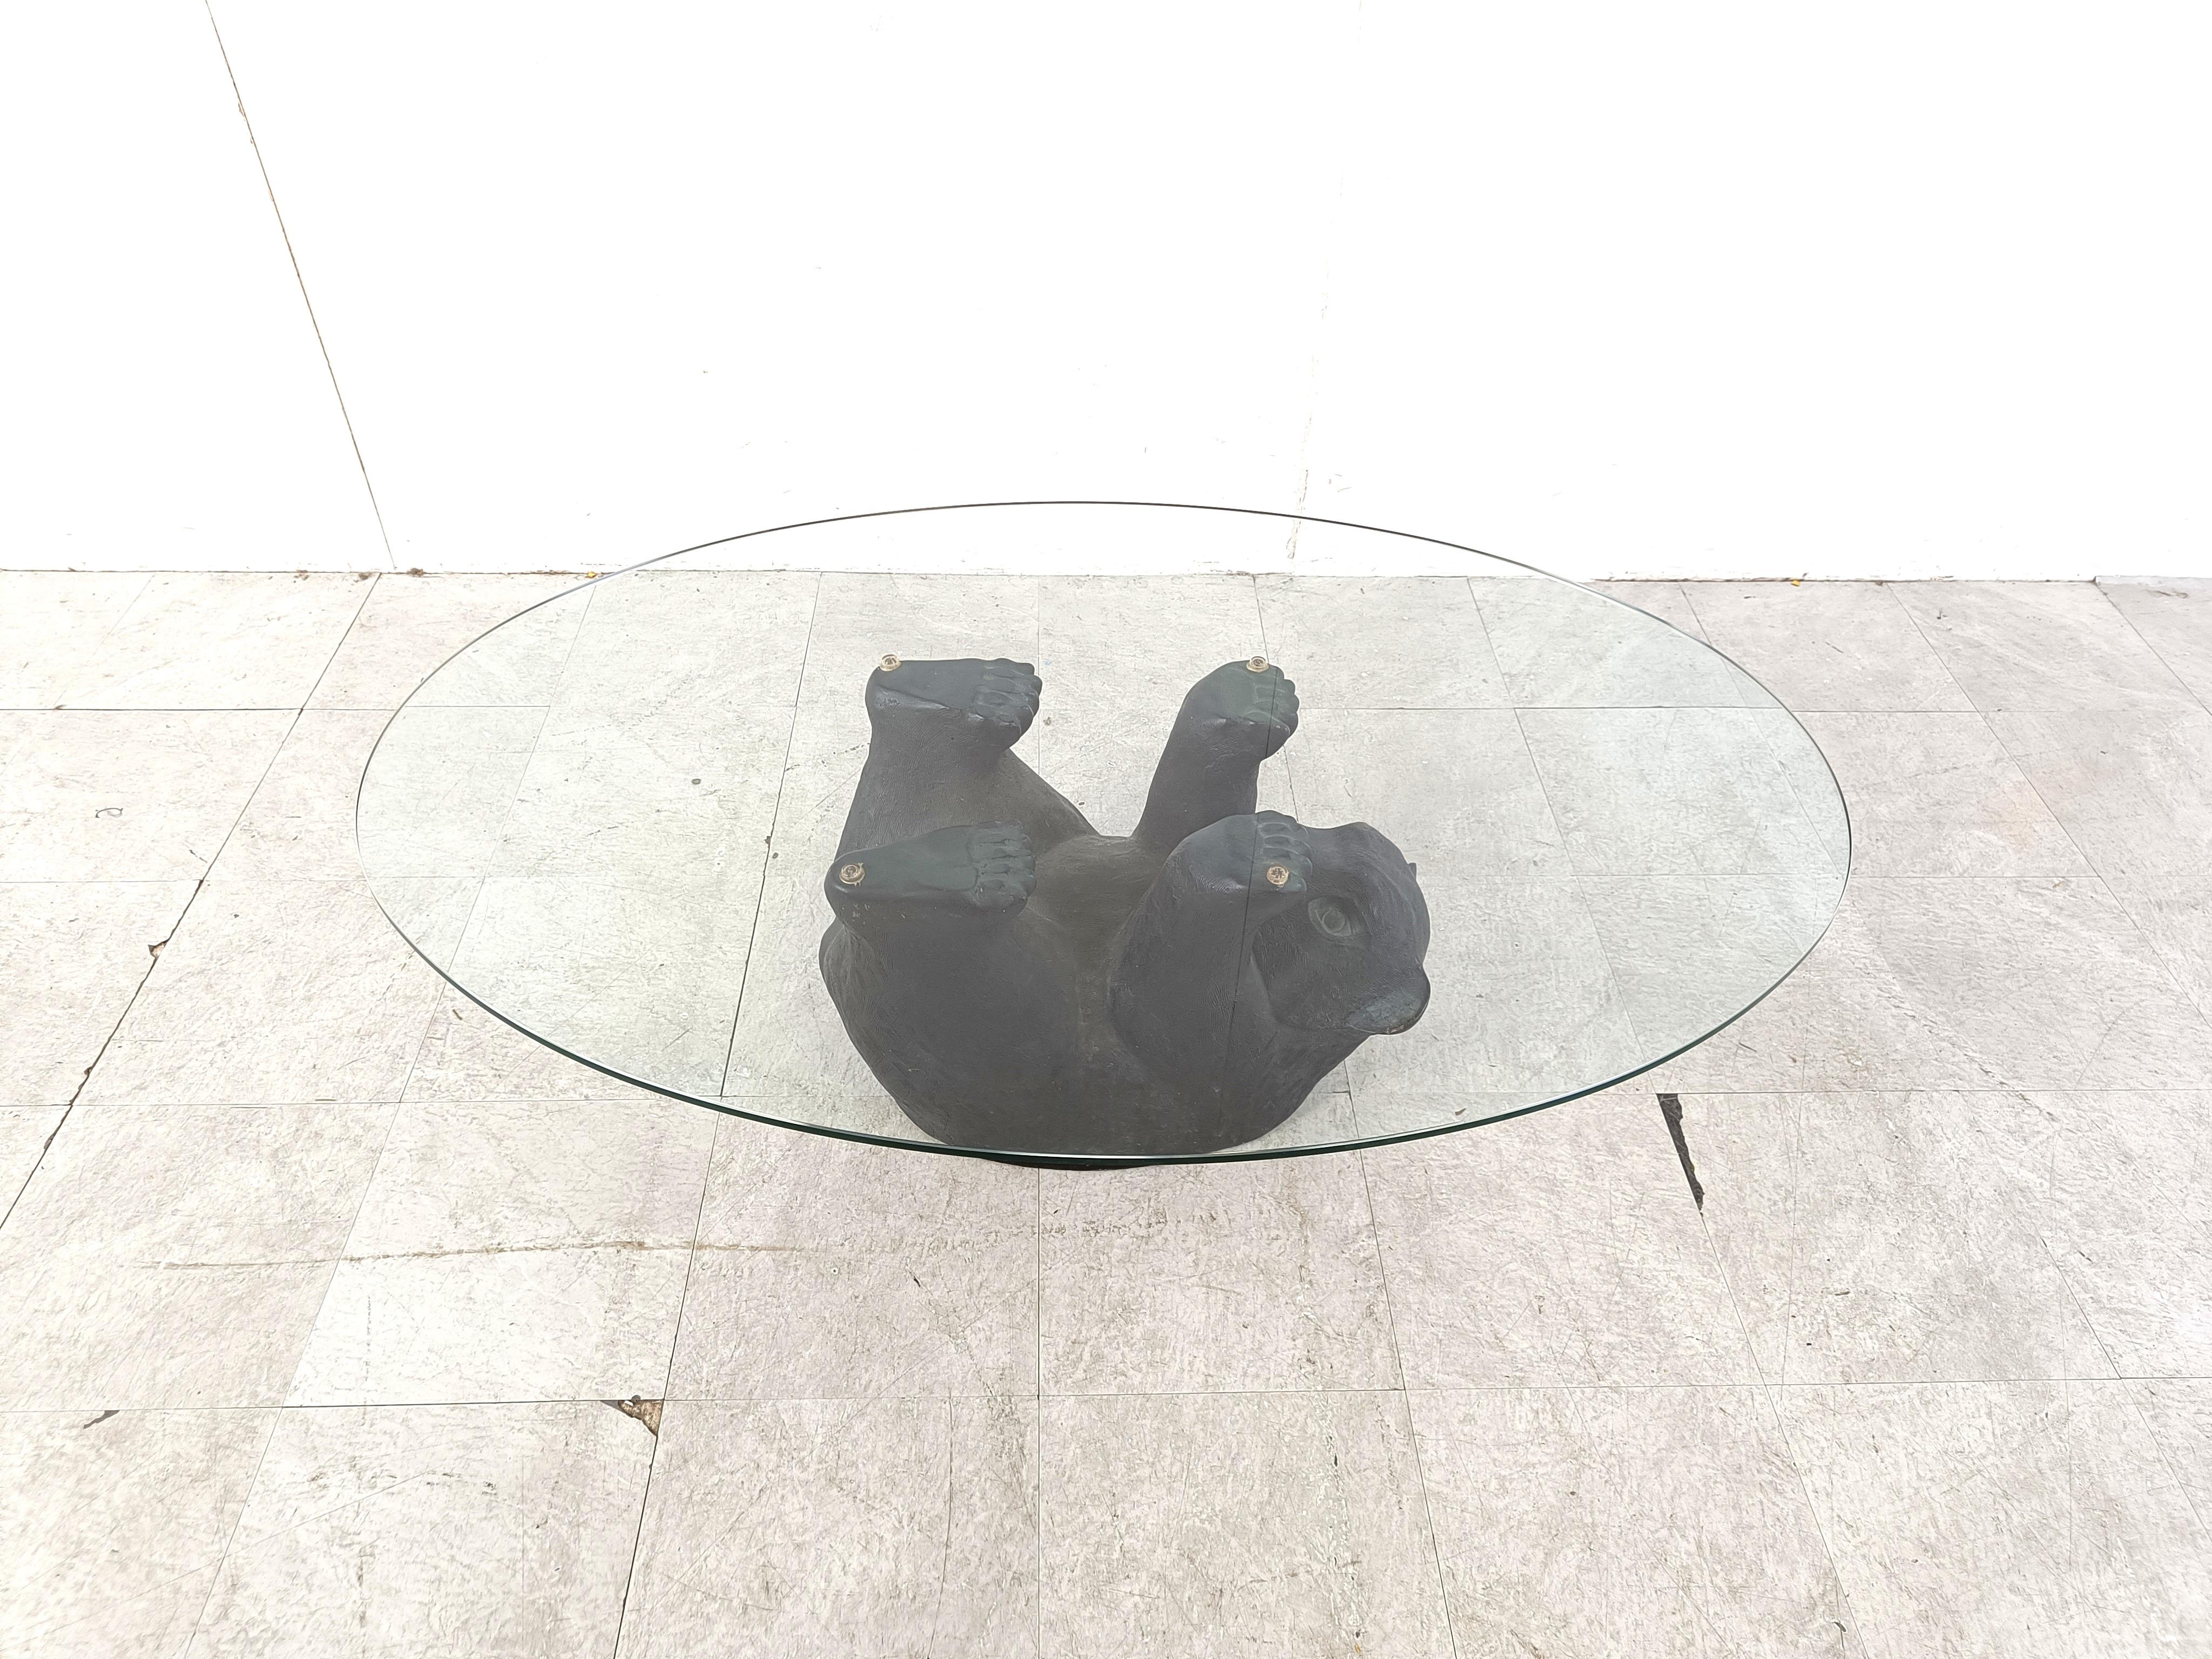 Auffälliger skulpturaler Couchtisch mit schwarzem Bär.

Dieser einzigartige Tisch sieht toll und irgendwie niedlich aus.

1970er Jahre - Belgien

Guter Zustand

Abmessungen Basis:
Höhe: 40cm
Breite: 110cm
Tiefe: 90cm

Ref.: 063877
